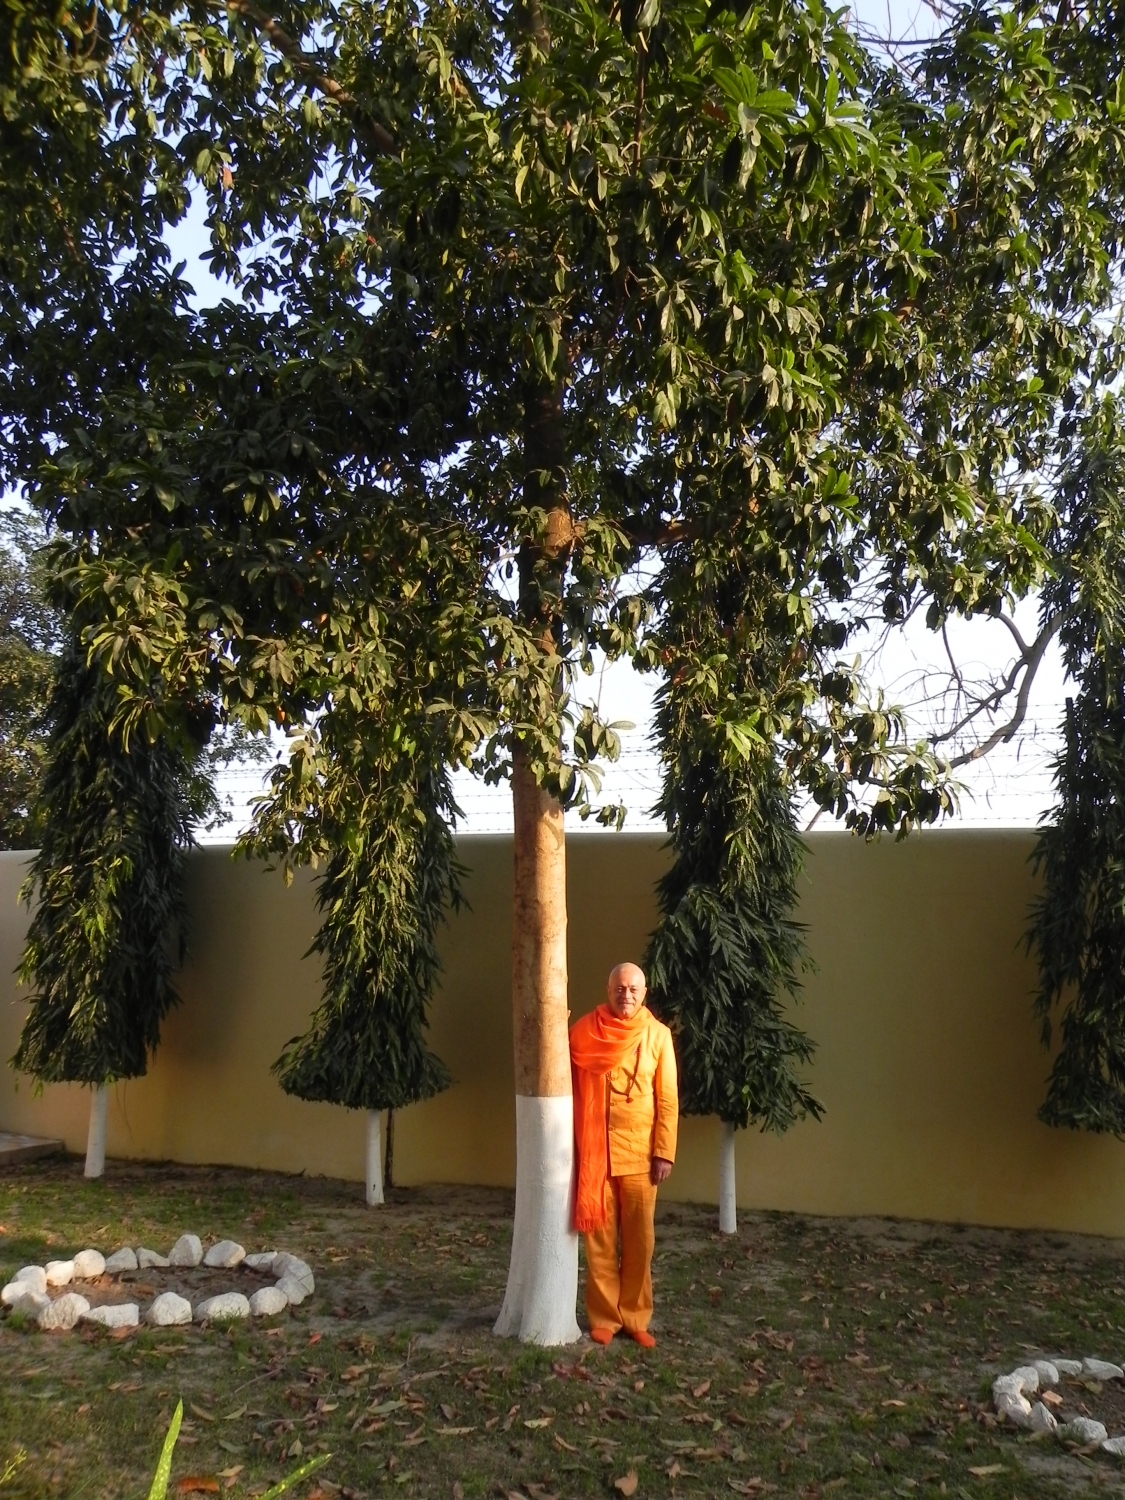 Encontro de H.H. Jagat Guru Amrta Sūryānanda Mahā Rāja com Svámin Súryaprakash e Svámin Niranjanánanda - Bihar School of Yoga, Munger, Índia – 2011